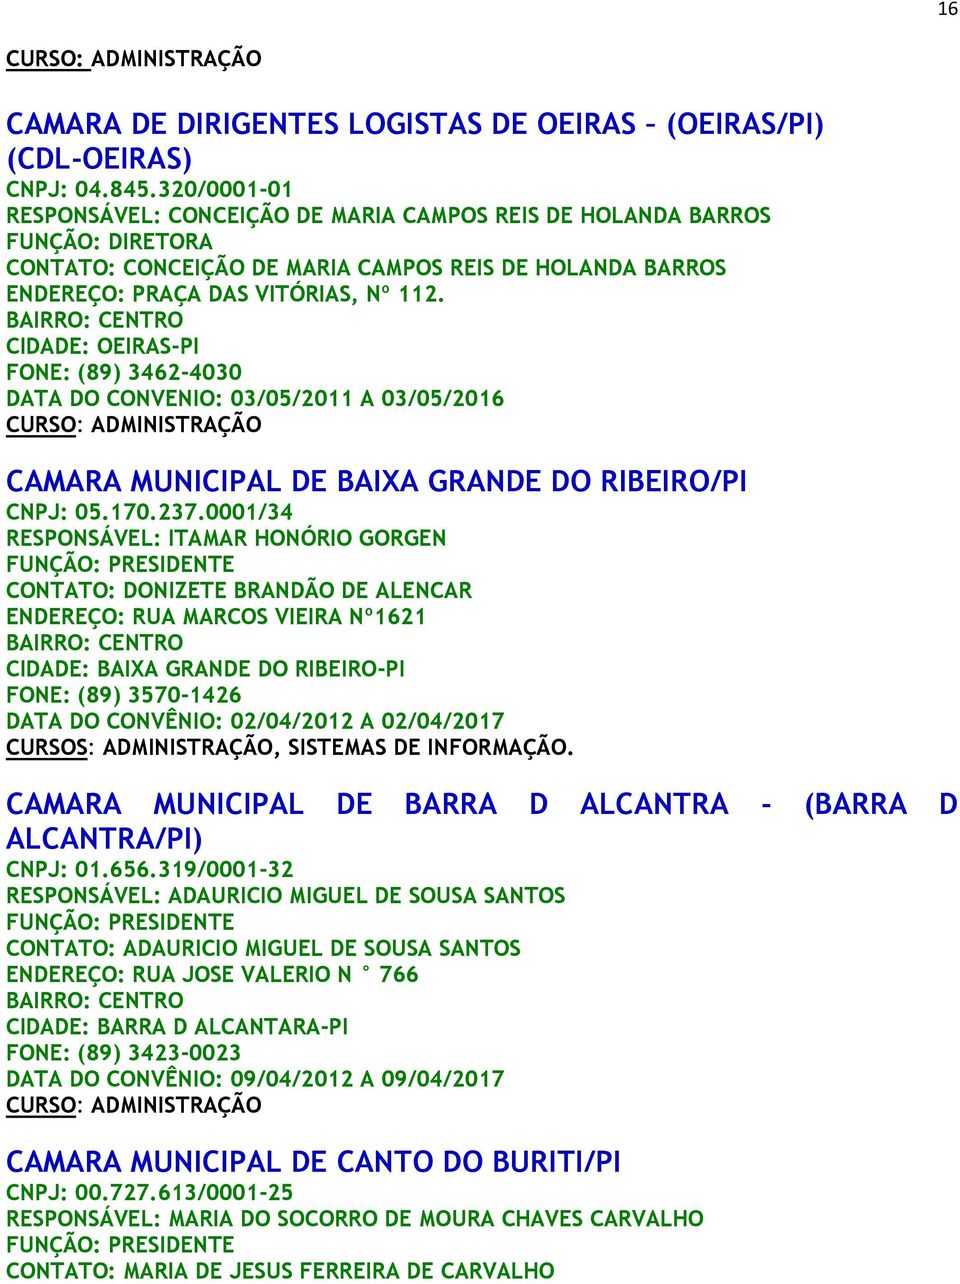 CIDADE: OEIRAS-PI FONE: (89) 3462-4030 DATA DO CONVENIO: 03/05/2011 A 03/05/2016 CAMARA MUNICIPAL DE BAIXA GRANDE DO RIBEIRO/PI CNPJ: 05.170.237.